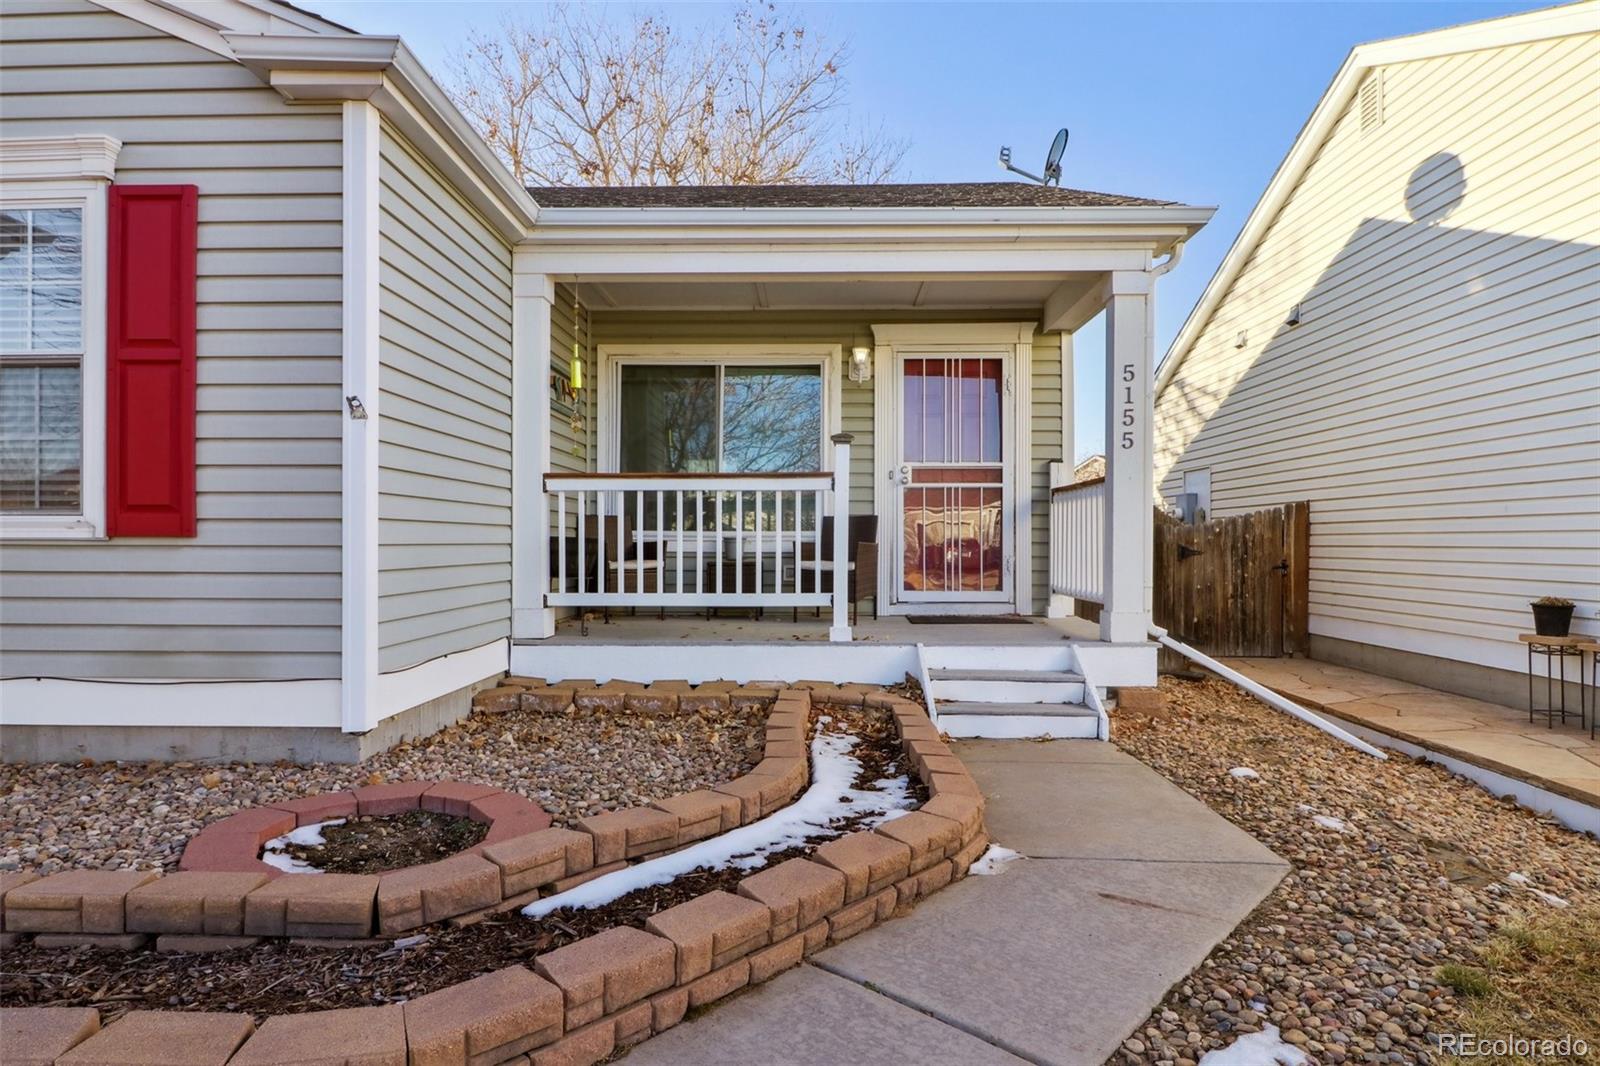 5155  kalispell street, Denver sold home. Closed on 2024-03-15 for $390,000.